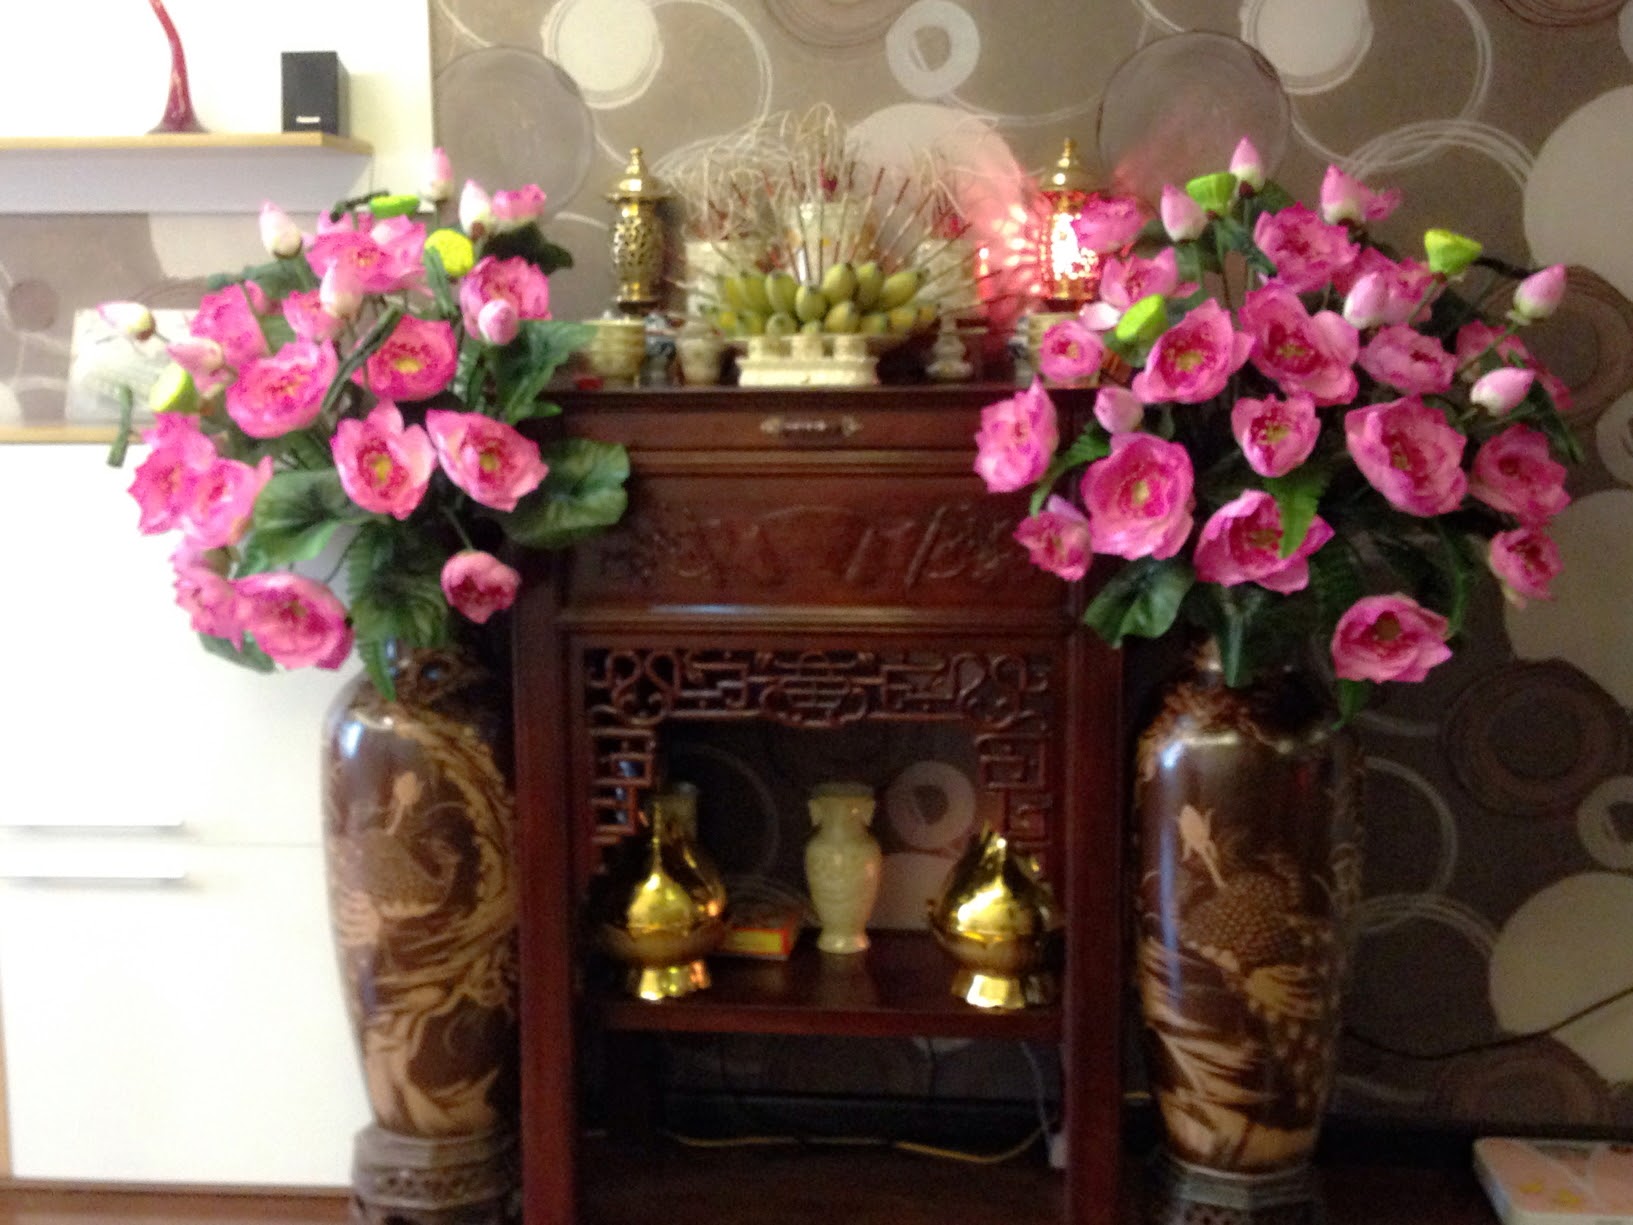 Châu hoa sen hồng trang trí không gian nhà cửa